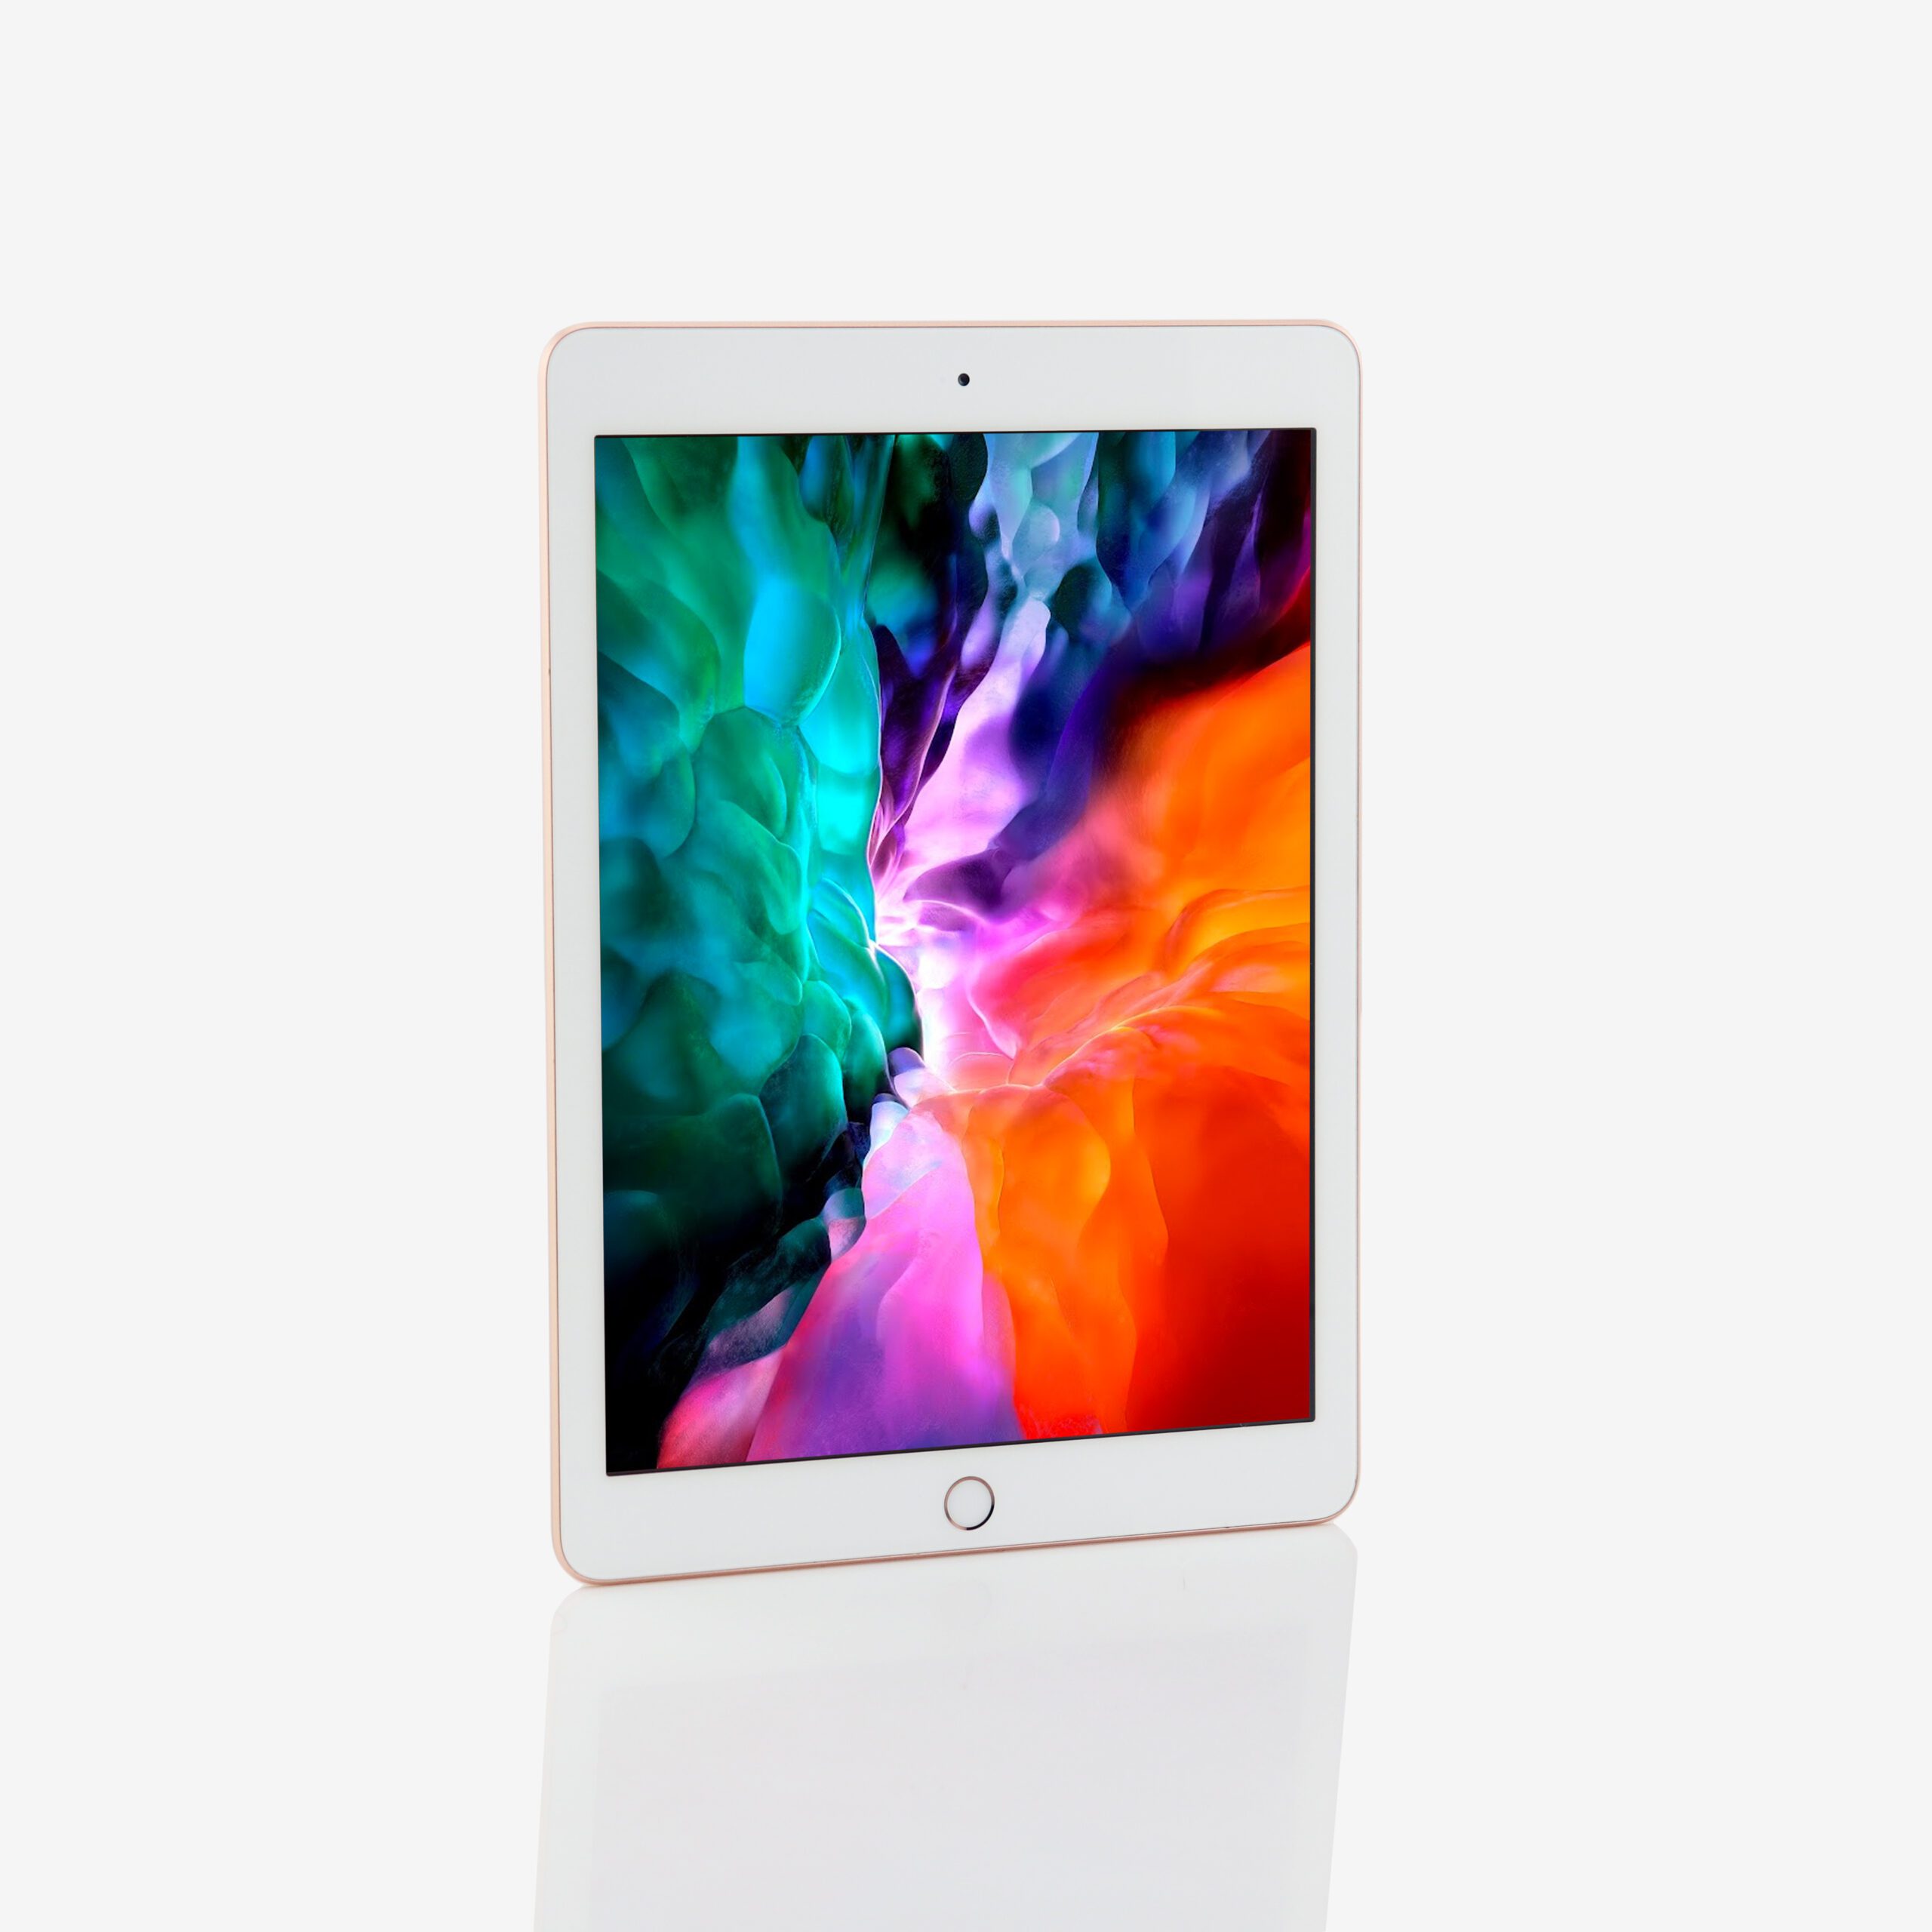 1 x iPad (7th generation, Wi-Fi) Rose Gold (2019)